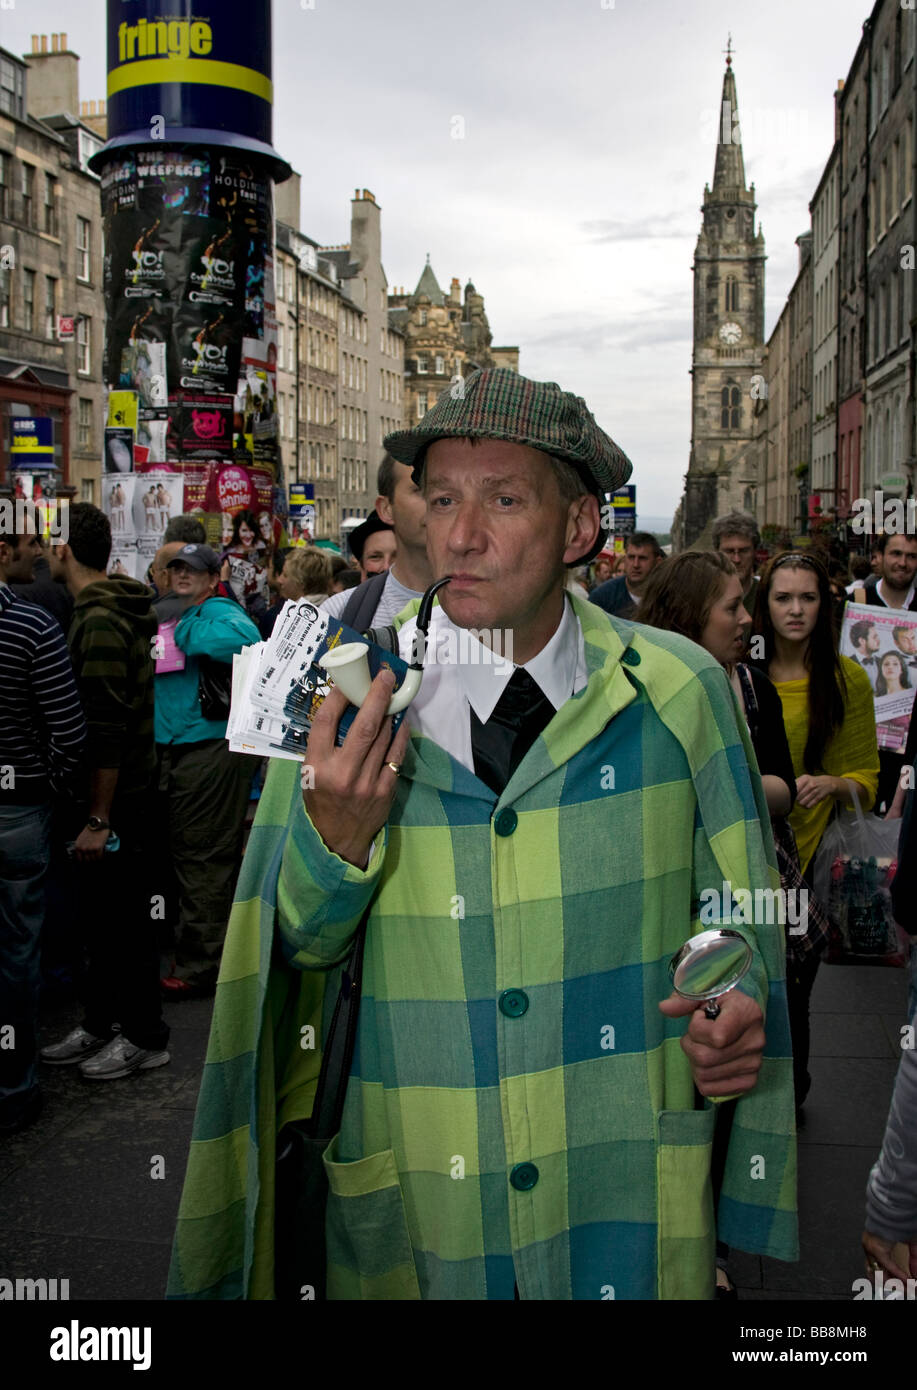 Artiste habillé comme Sherlock Holmes character Edinburgh Fringe Festival, en Écosse au Royaume-Uni, en Europe Banque D'Images